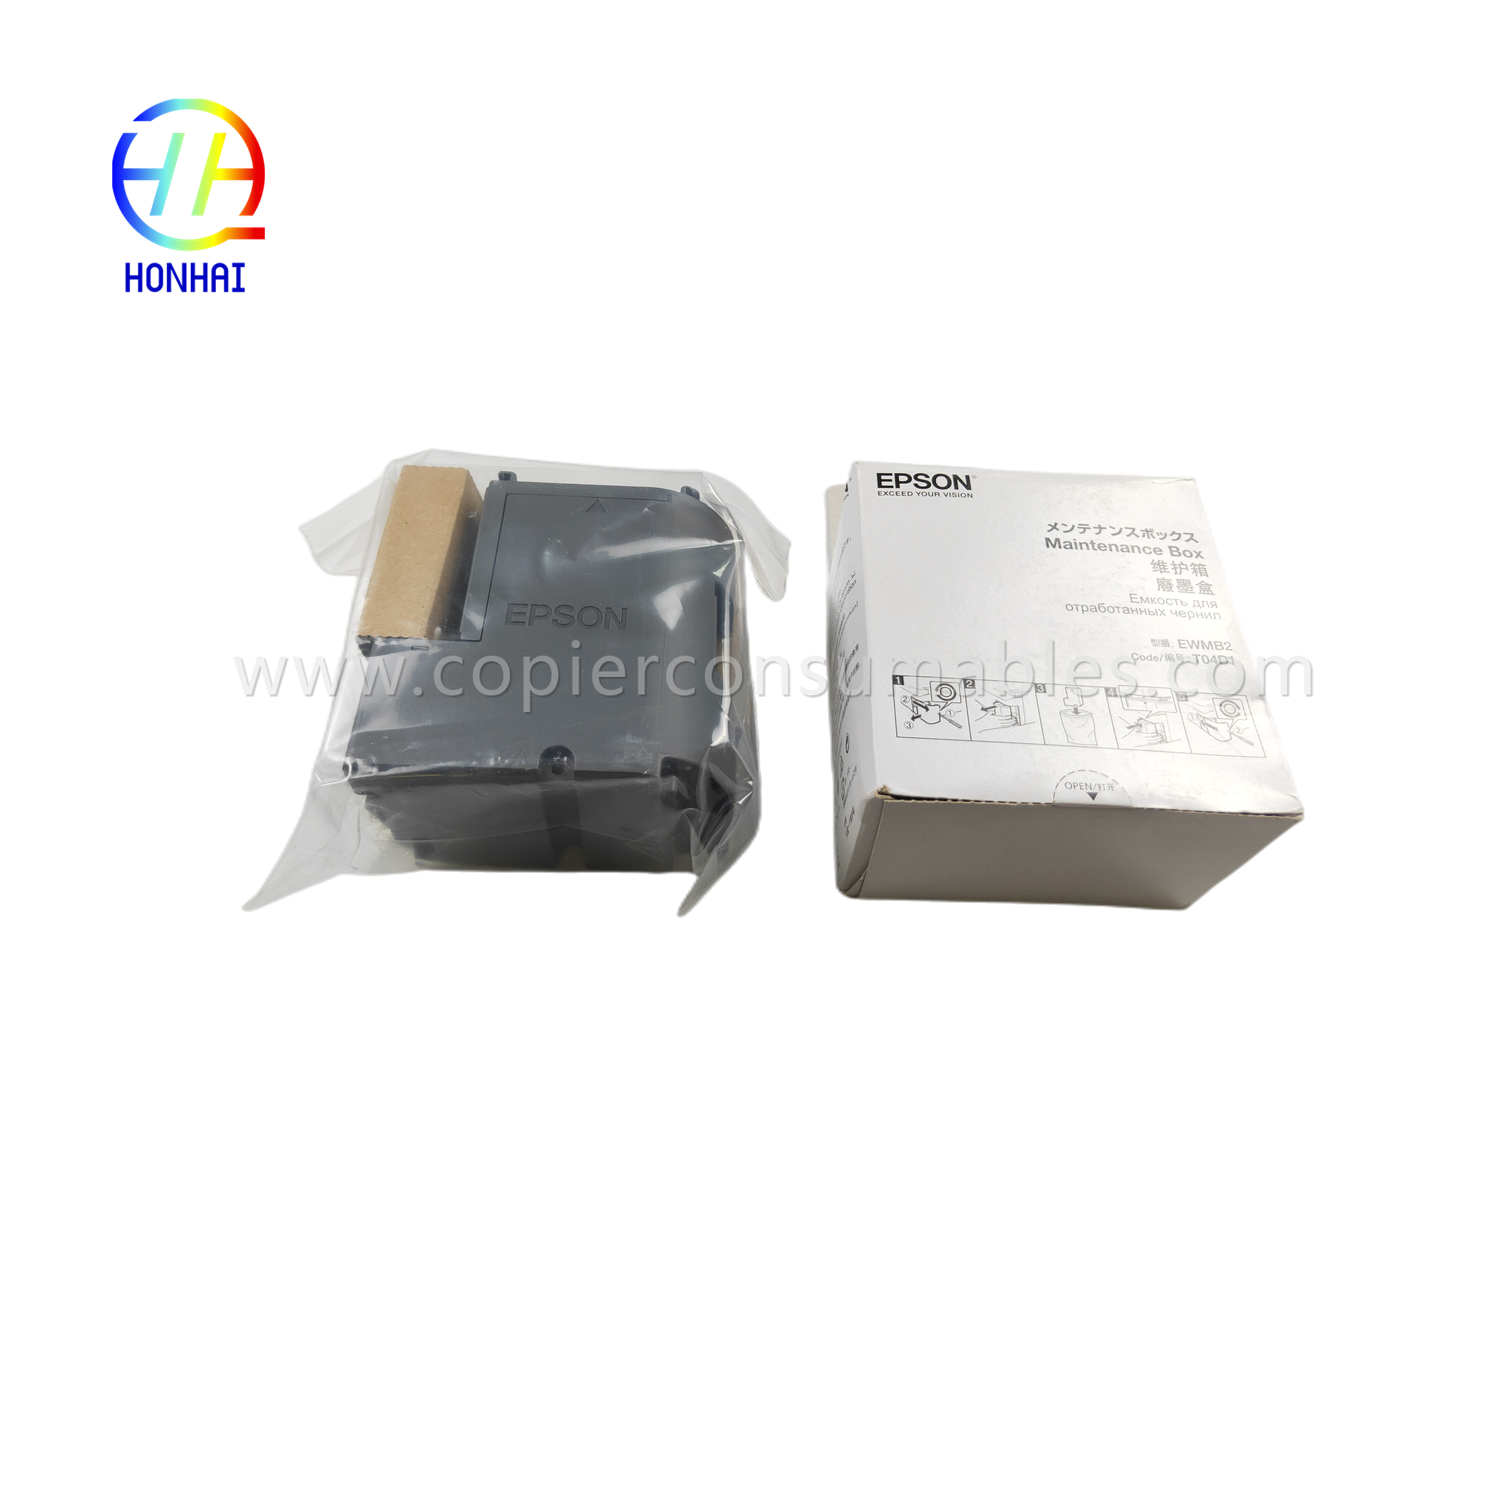 Originalna kutija za održavanje za Epson L6160 L6170 L6190 M1140